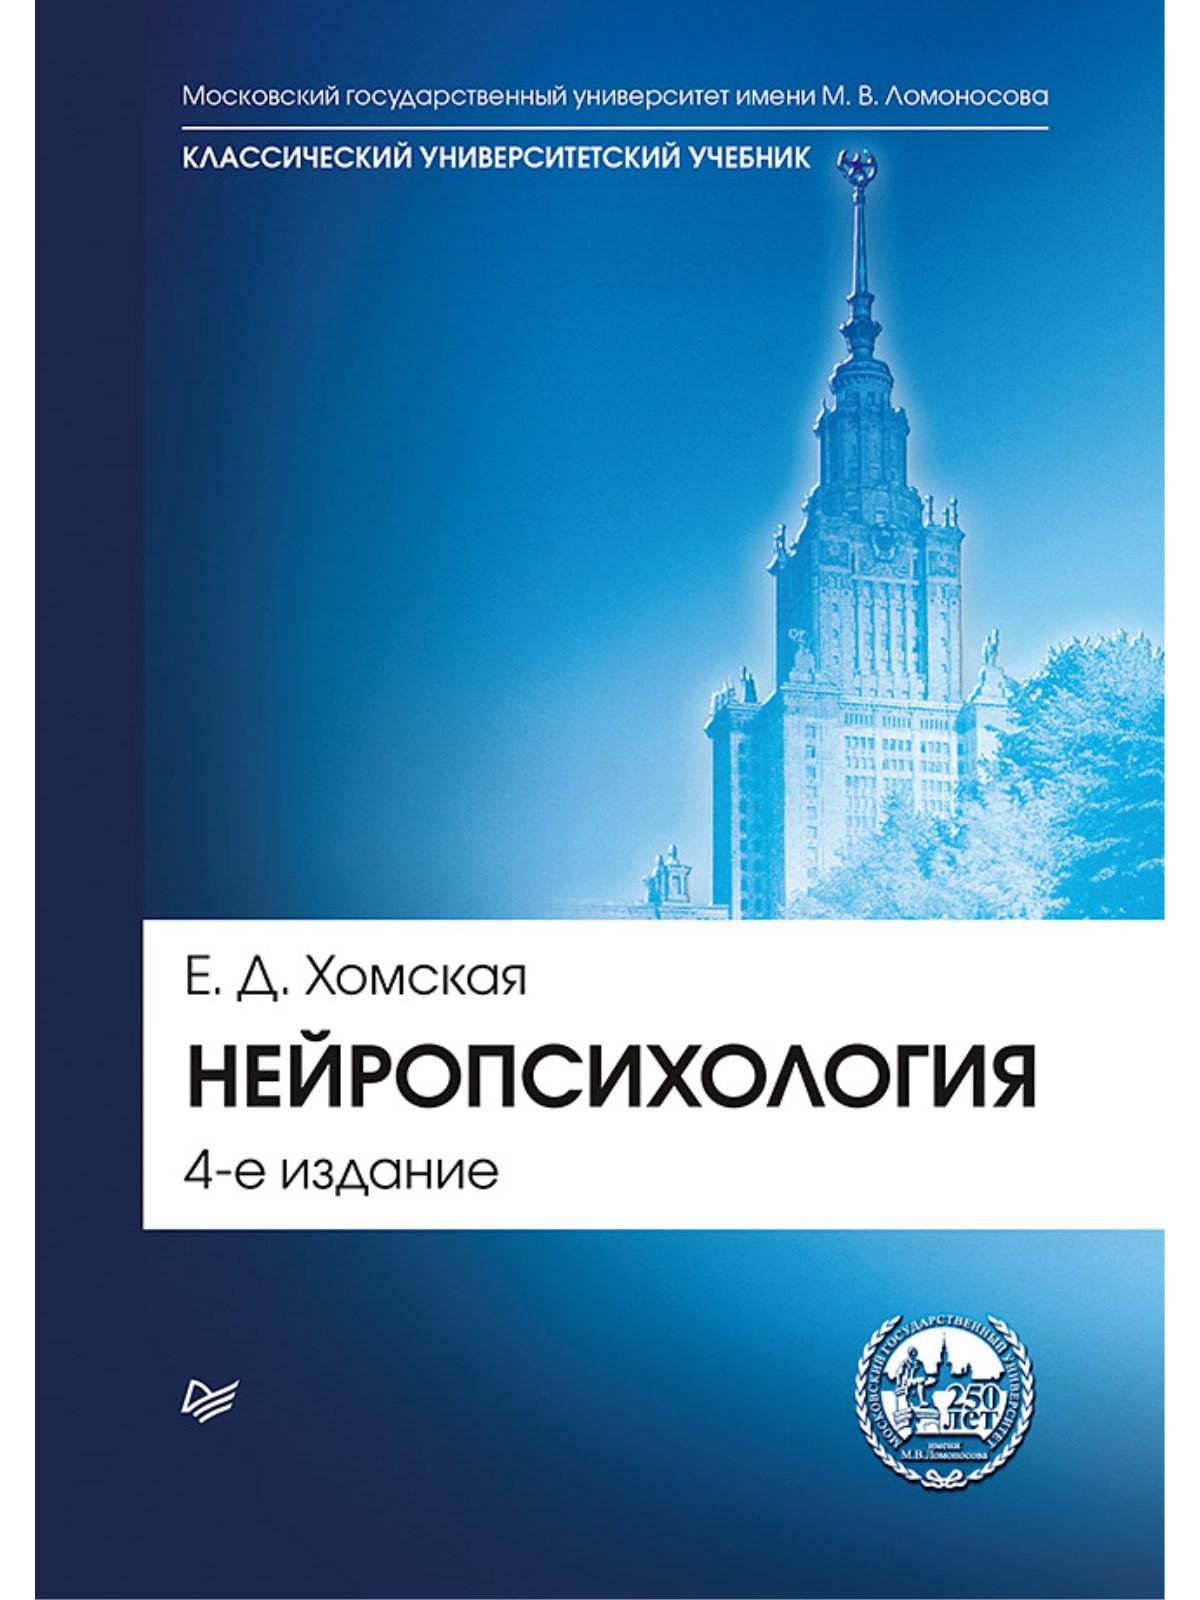 Хомская Е Д - Нейропсихология: Учебник для вузов. 4-е изд.